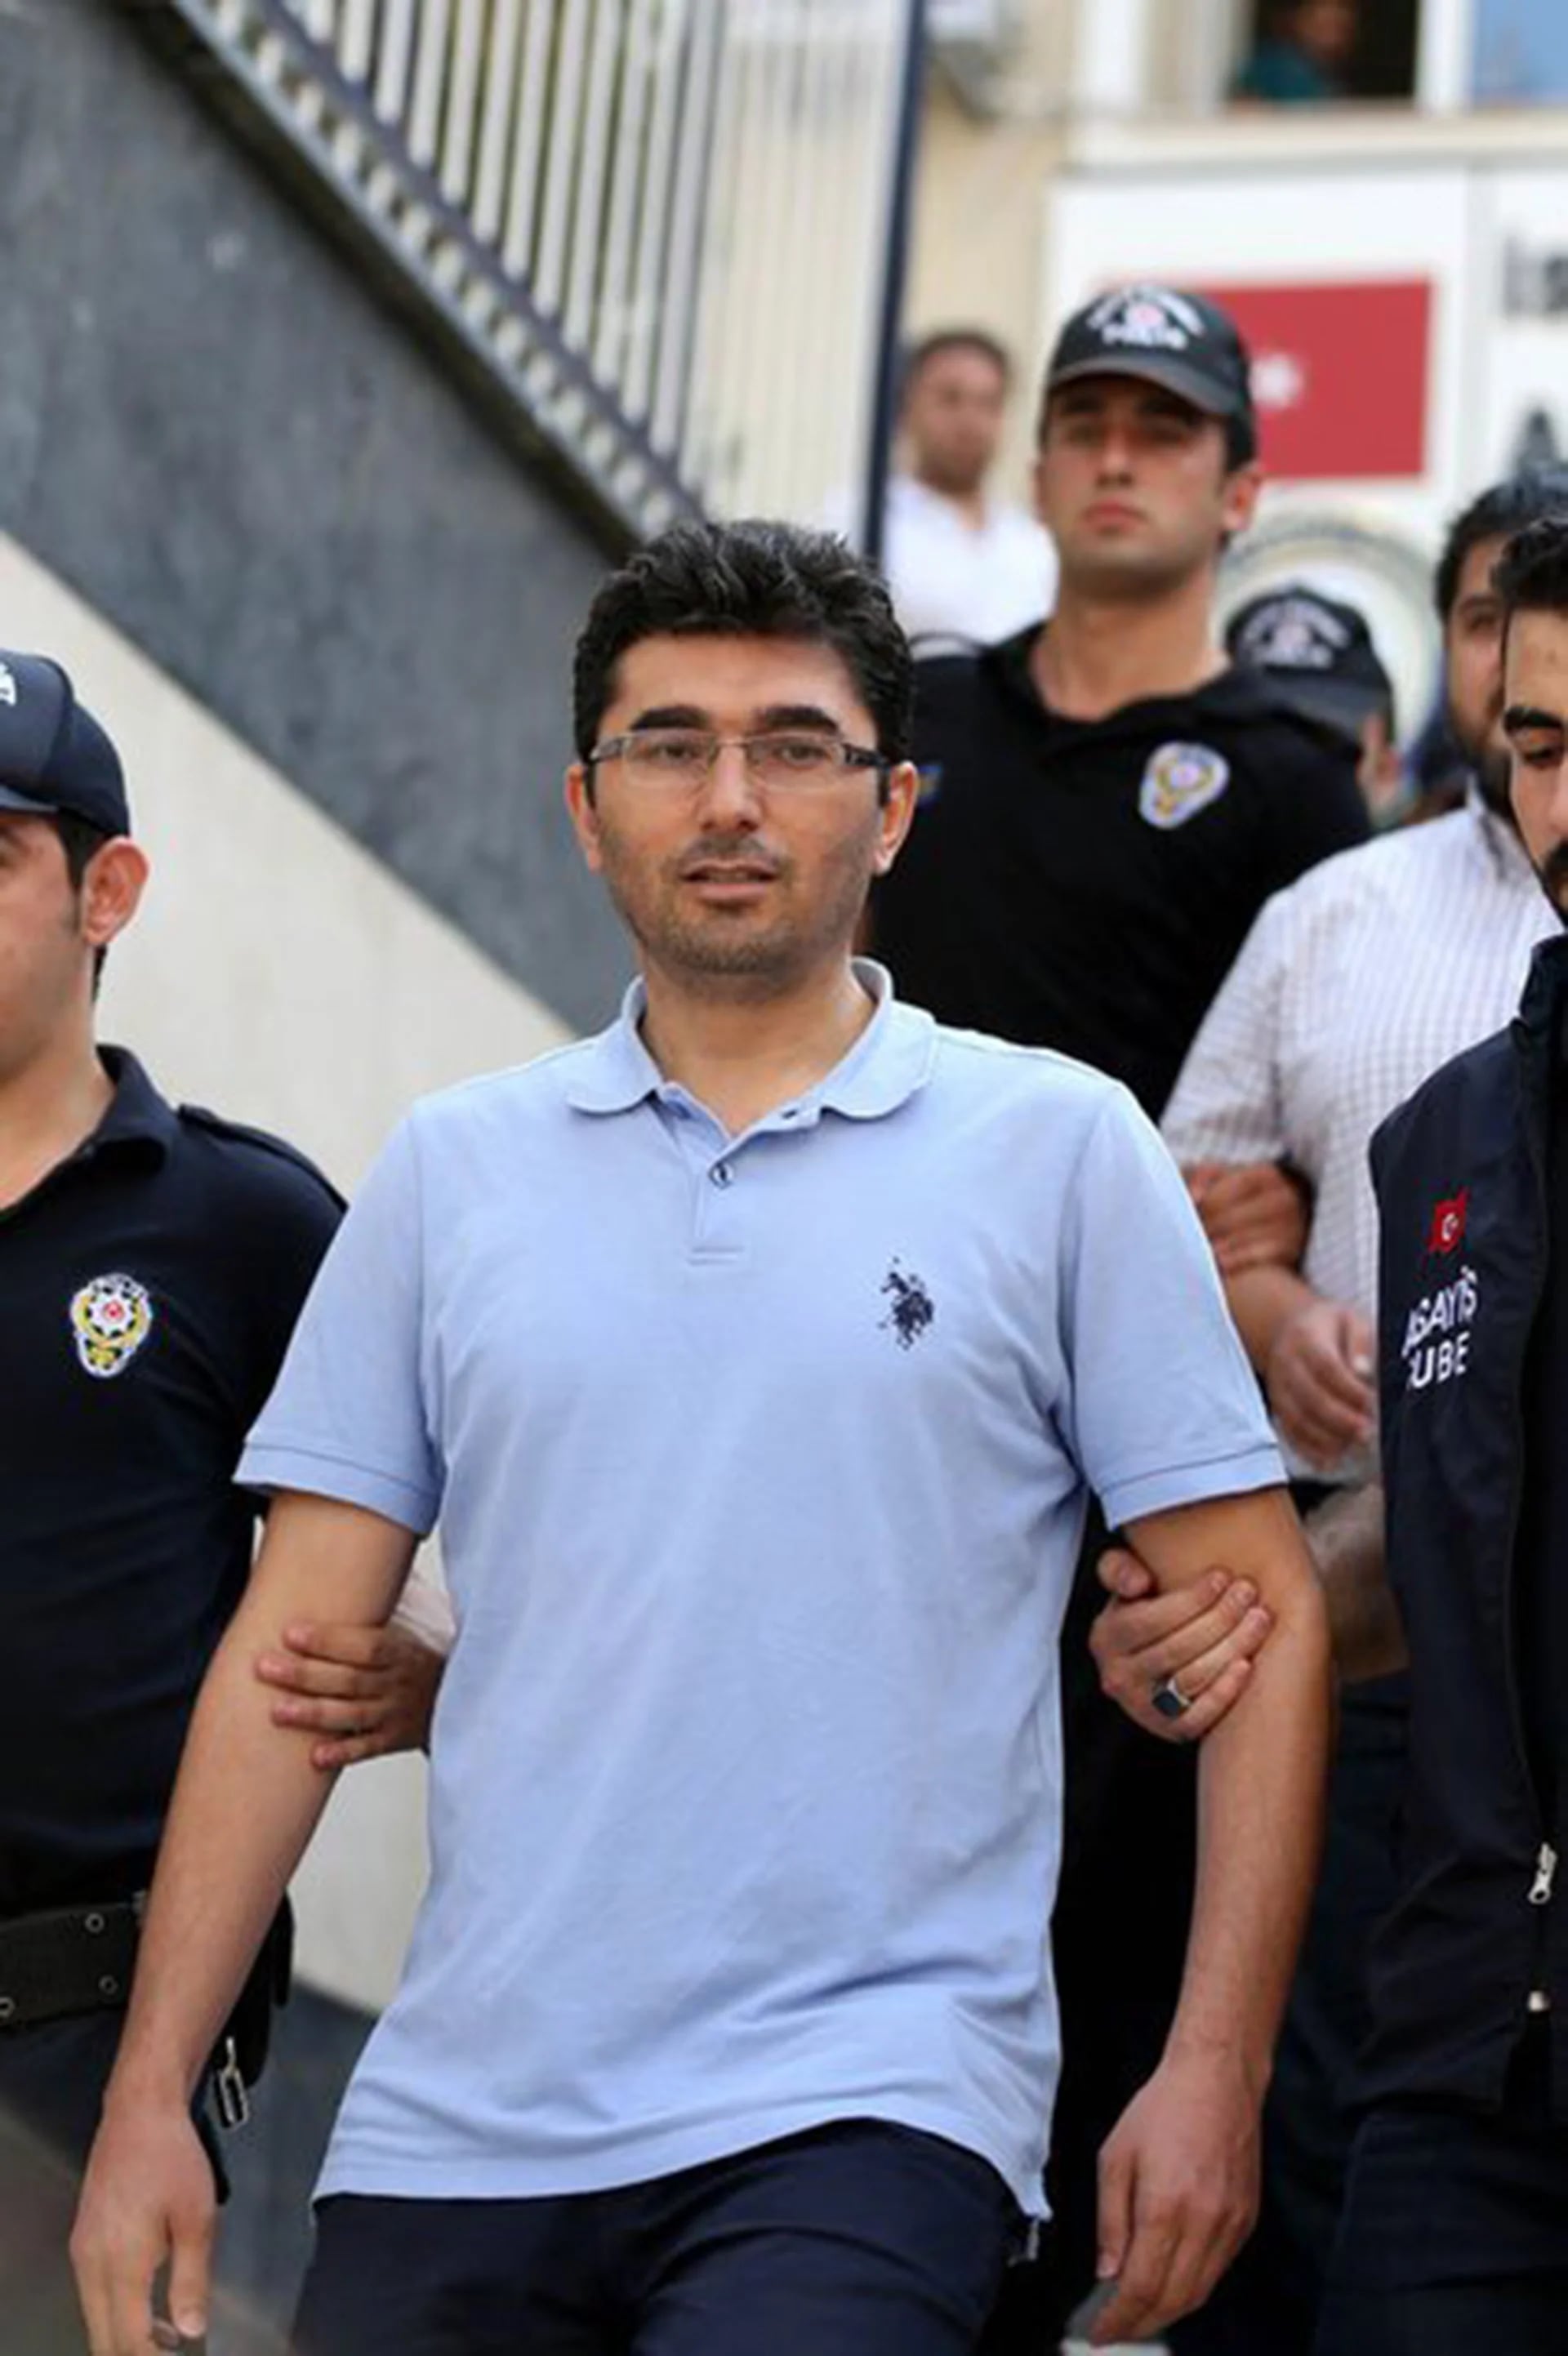 “Bayram Kaya. Hizo su carrera investigando la vida económica de Turquía. Ahora bajo arresto por excelentes archivos de la corte” @MahirZeynalov